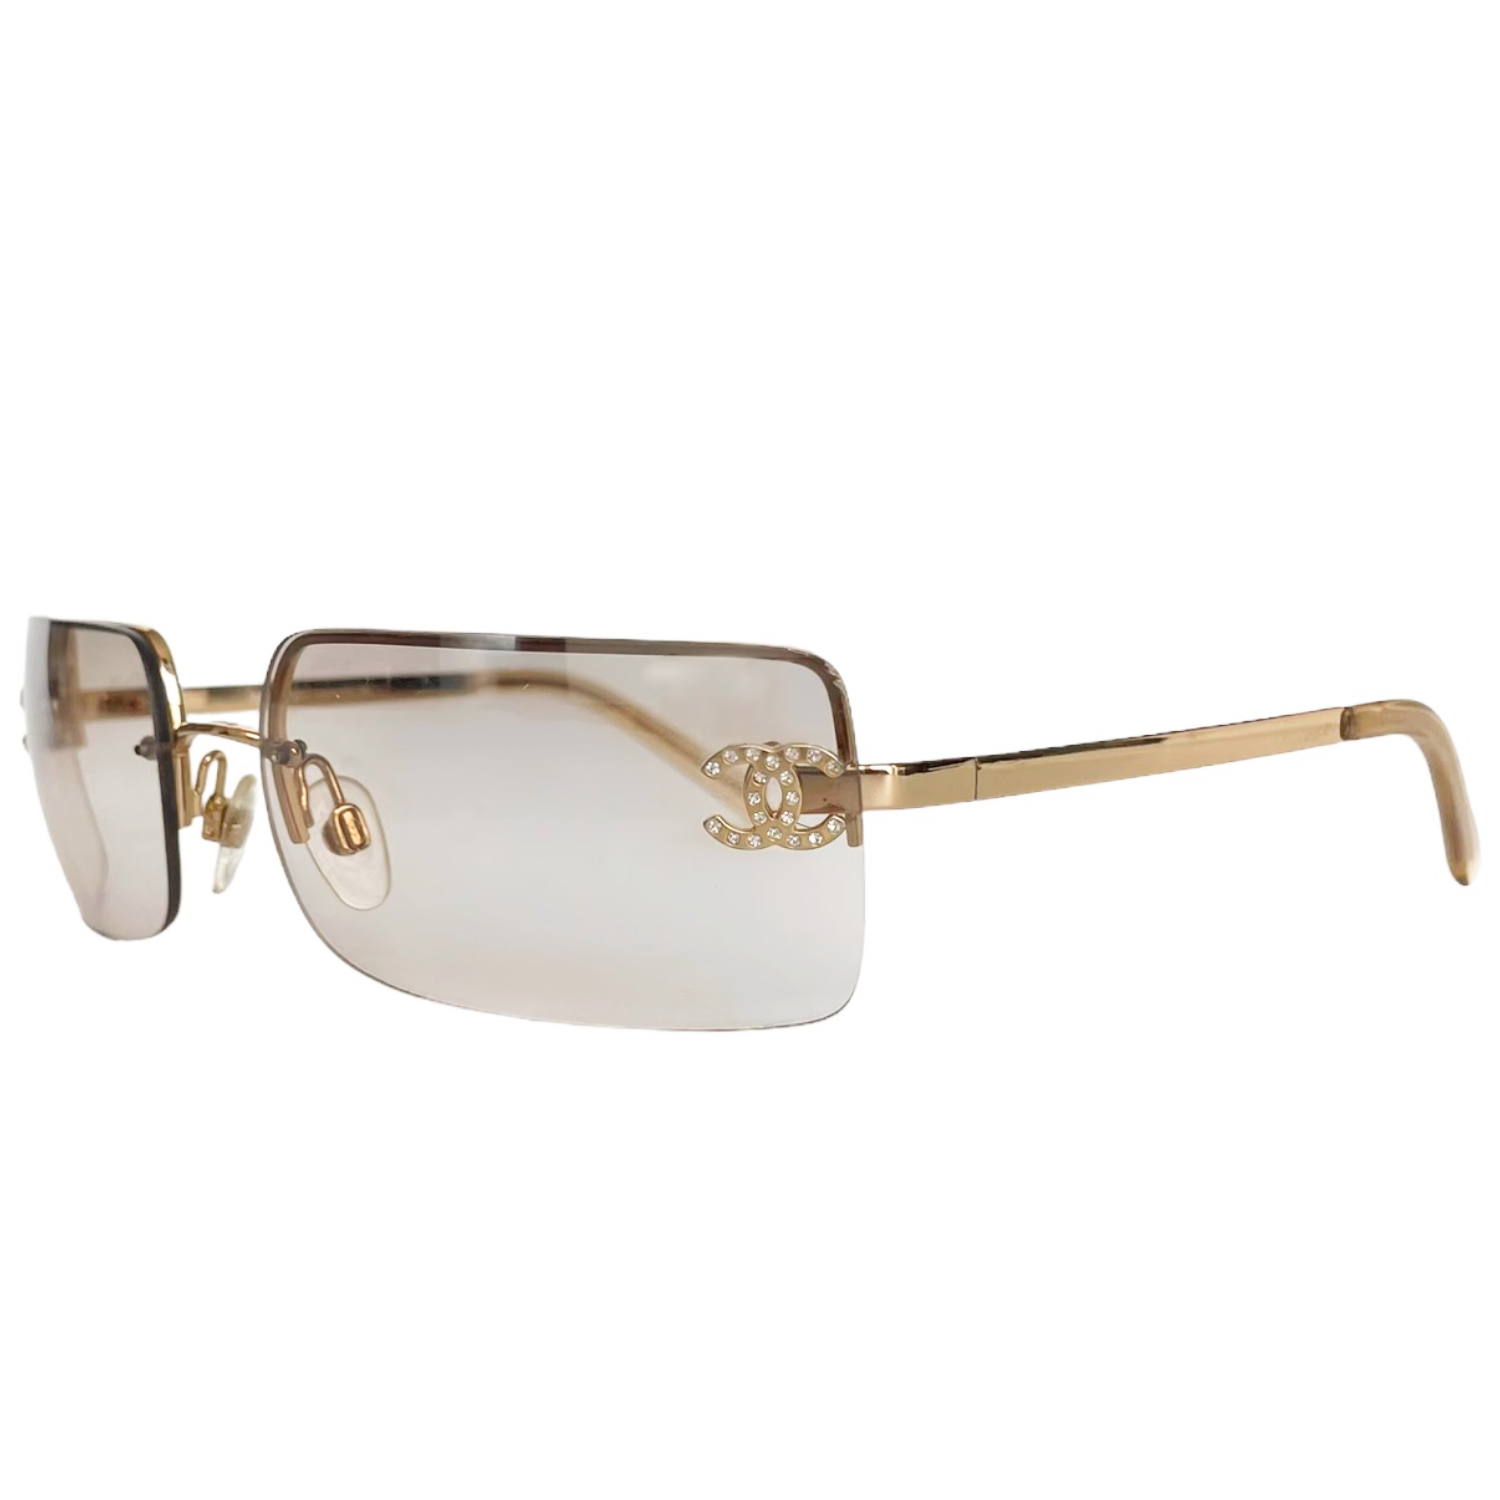 Chanel Diamante Rimless Sunglasses in Gold